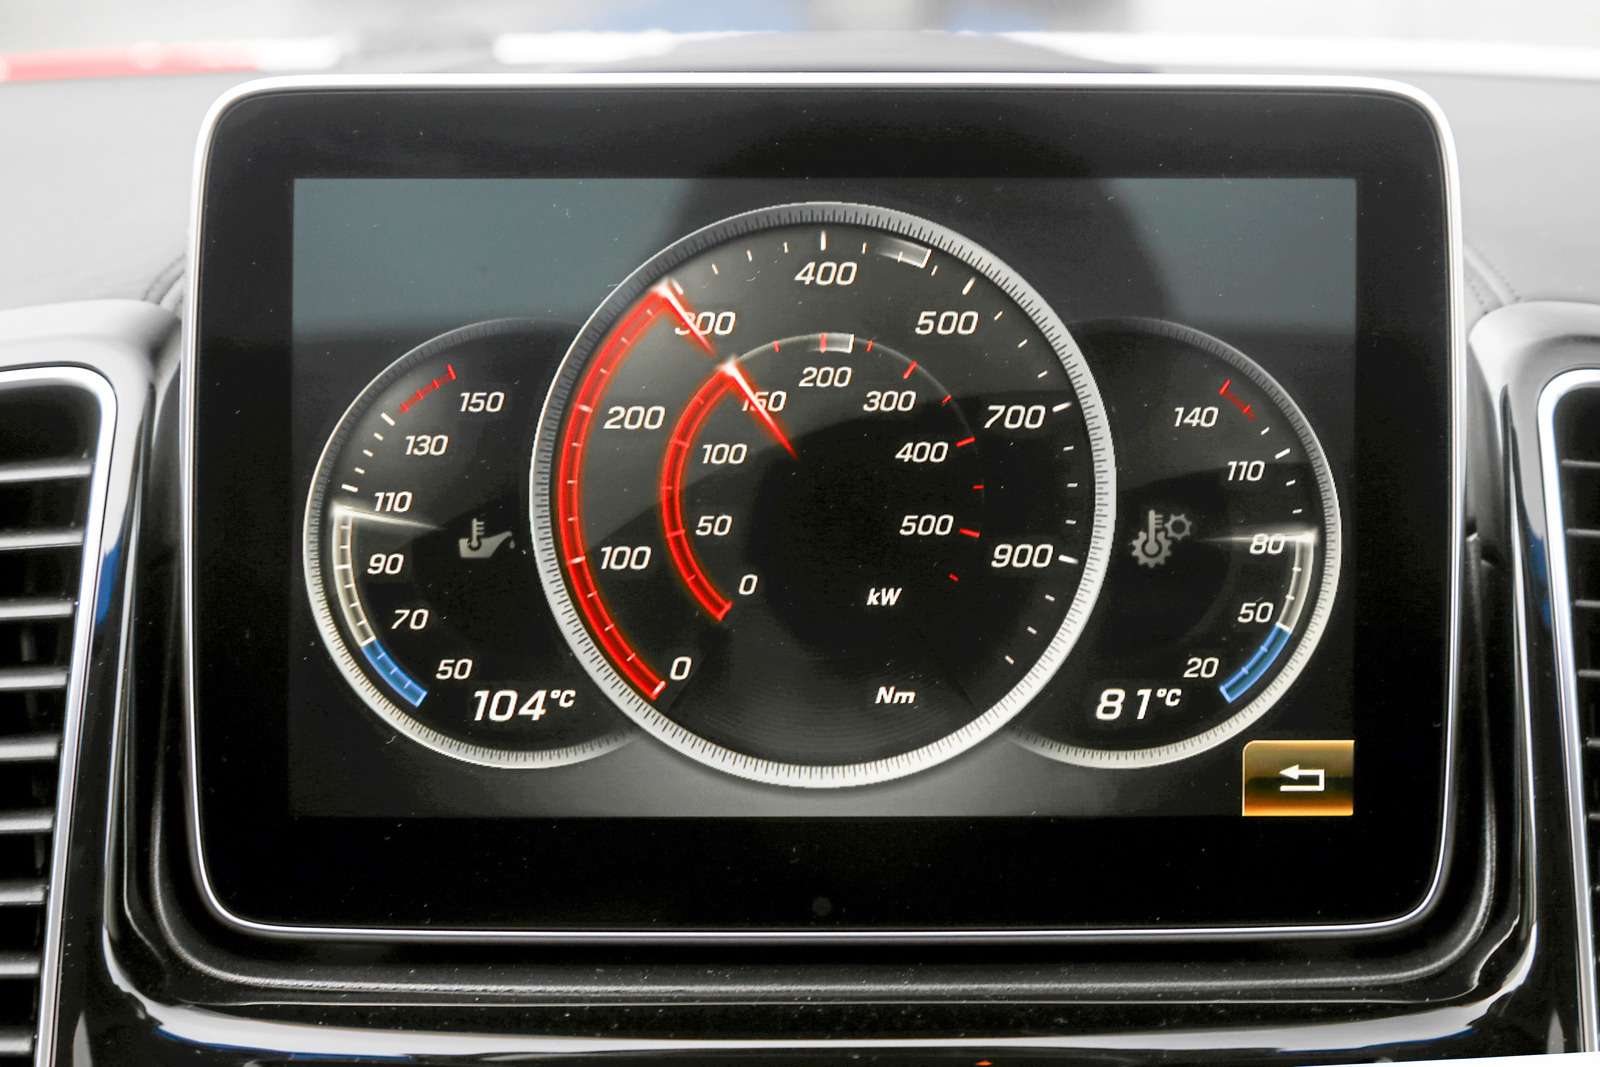 Mercedes-AMG GLE 63 S Coupe. Спортивные приборы показывают мощность, крутящий момент, температуру моторного масла и трансмиссионной жидкости.